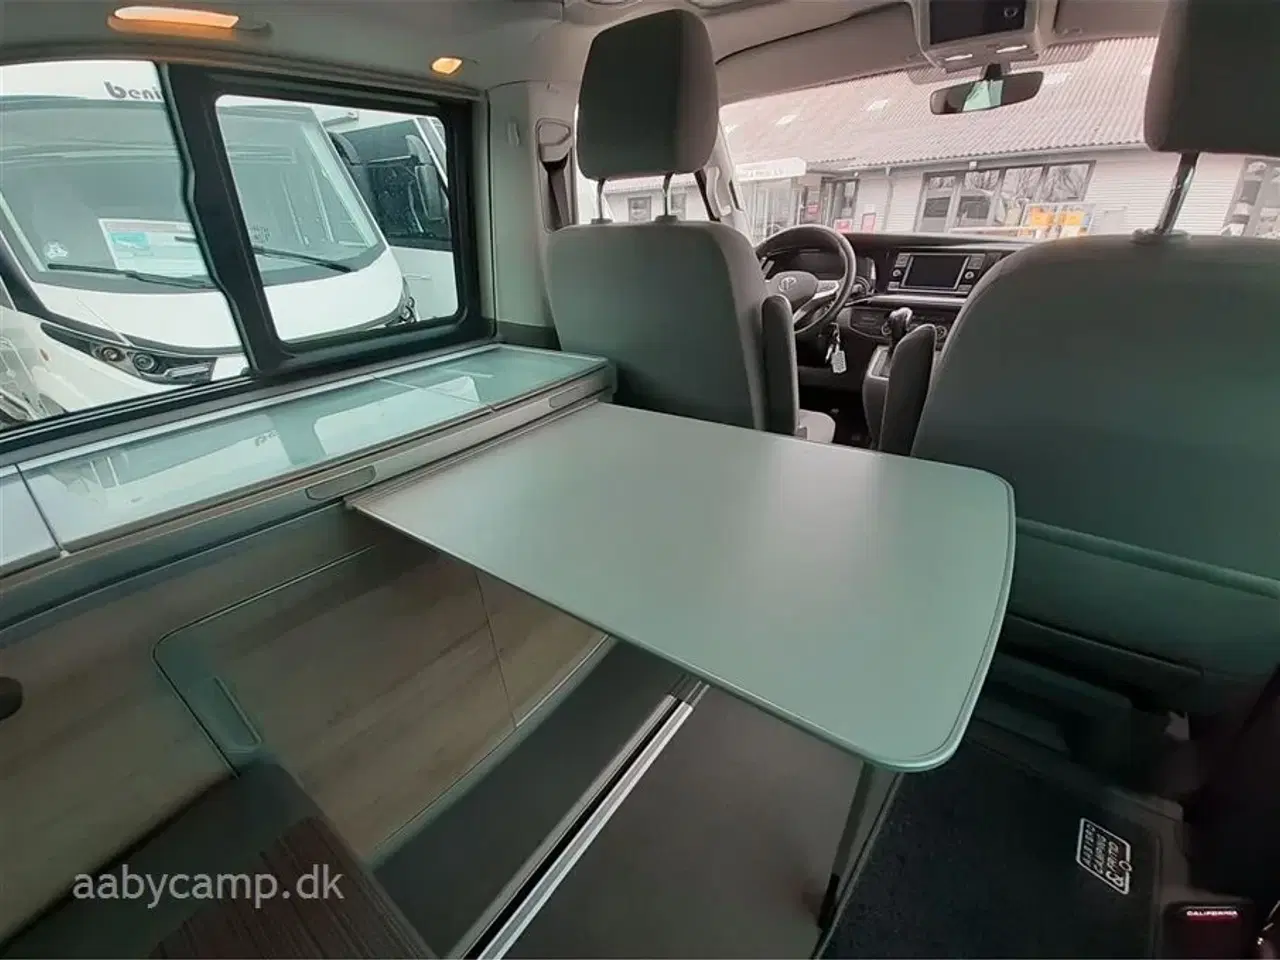 Billede 14 - 2021 - VW California Coast Aut.   Lille kompakt camper. DSG. Adaptiv fartpilot. sommer/vinterhjul. undervognsbehandlet fra ny.